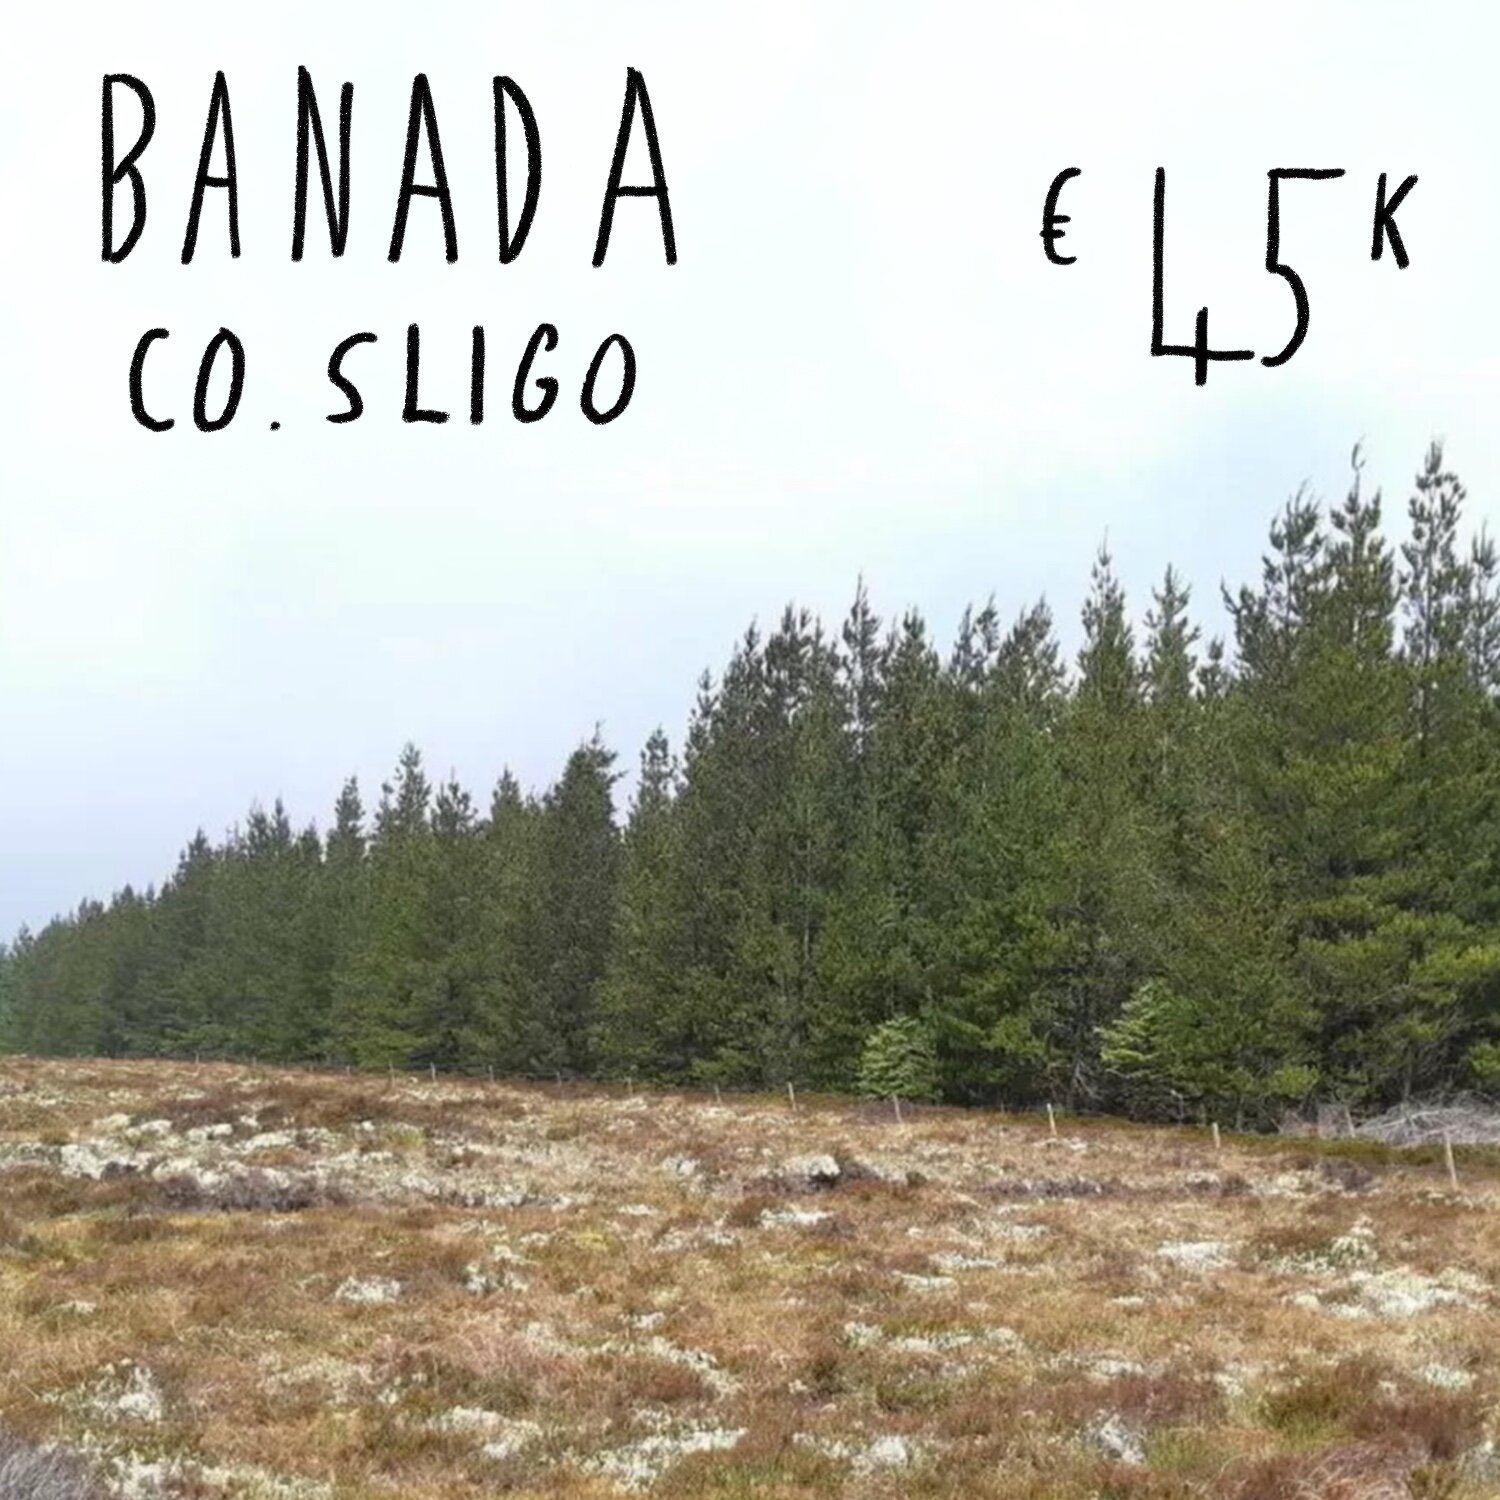 Banada, Co. Sligo. €45k